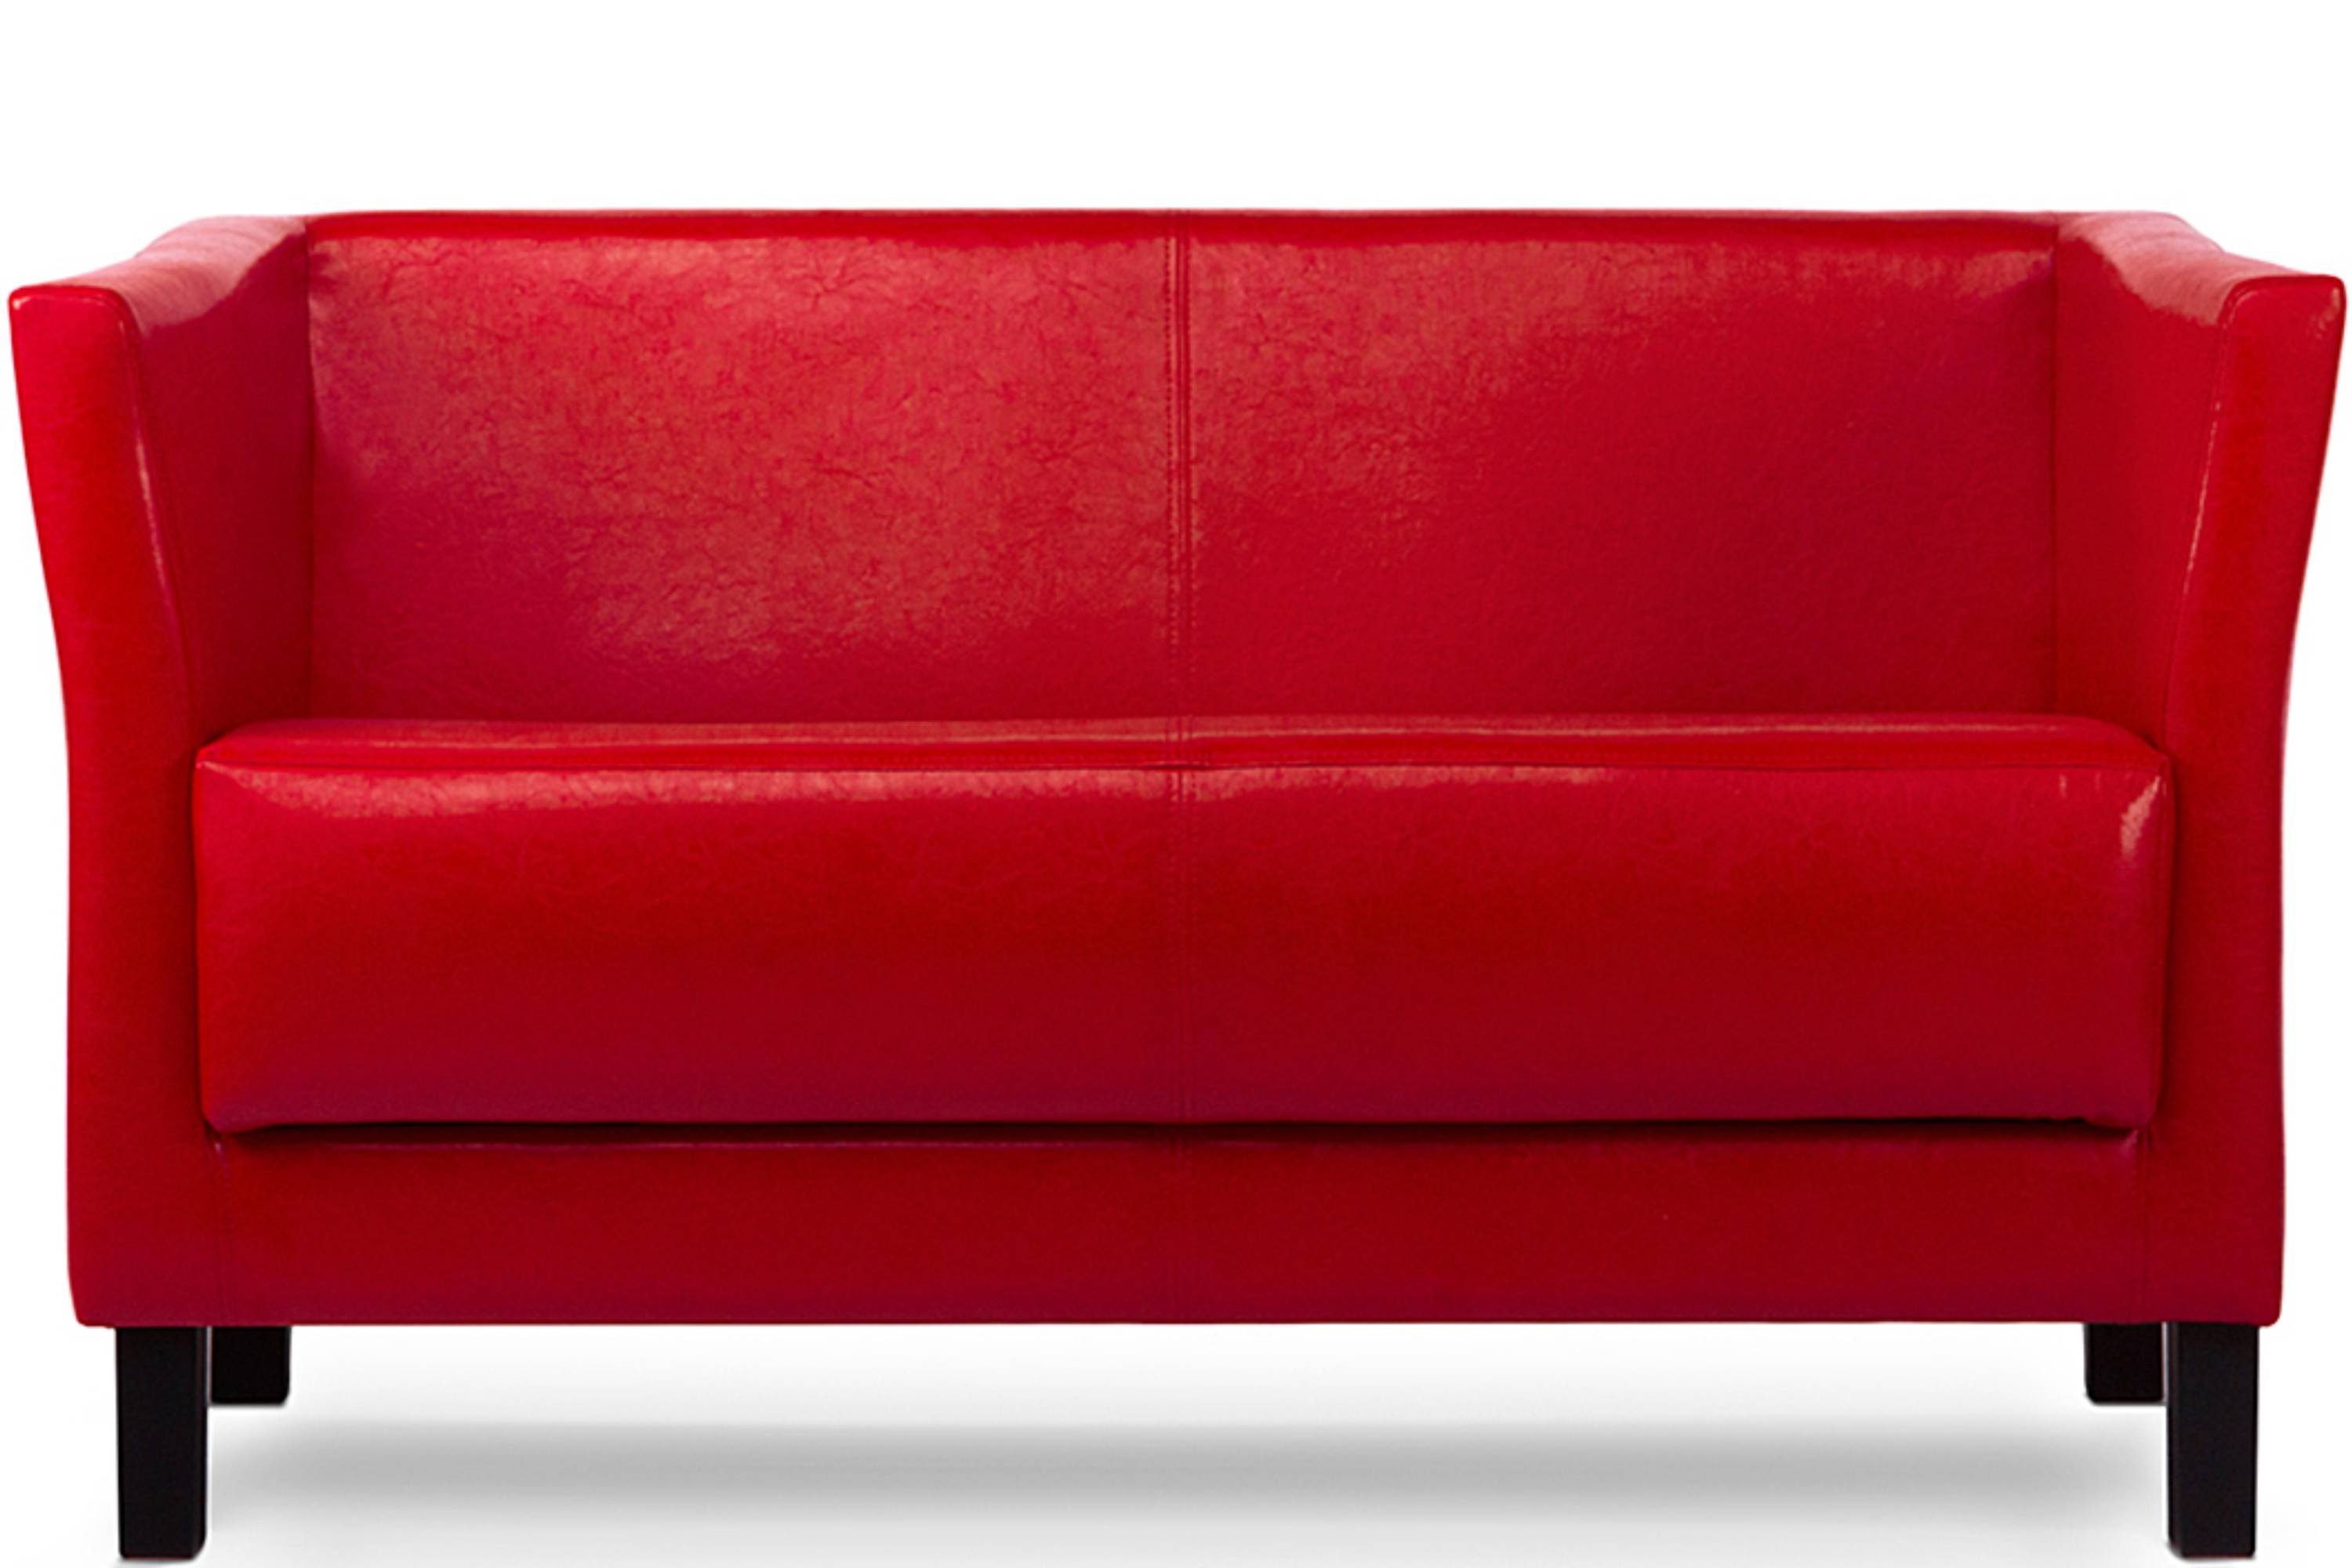 Konsimo 2-Sitzer ESPECTO Sofa 2 Personen, weiche Sitzfläche und hohe Rückenlehne, Kunstleder, hohe Massivholzbeine rot | rot